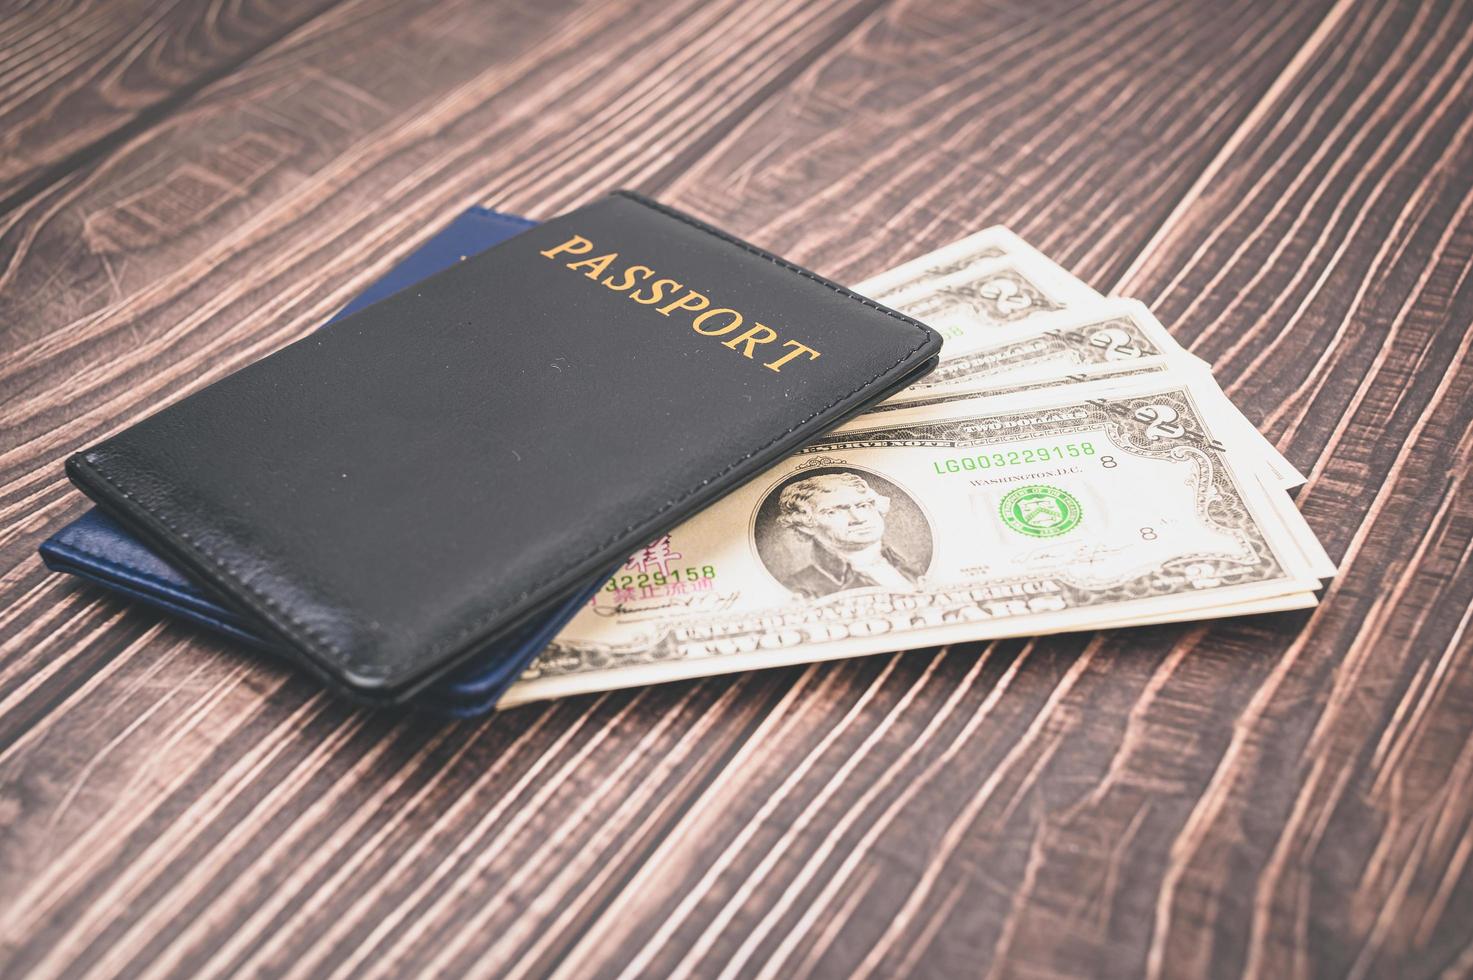 Reisepass sparen Geld für Reisen und Geschäfte auf der ganzen Welt. foto